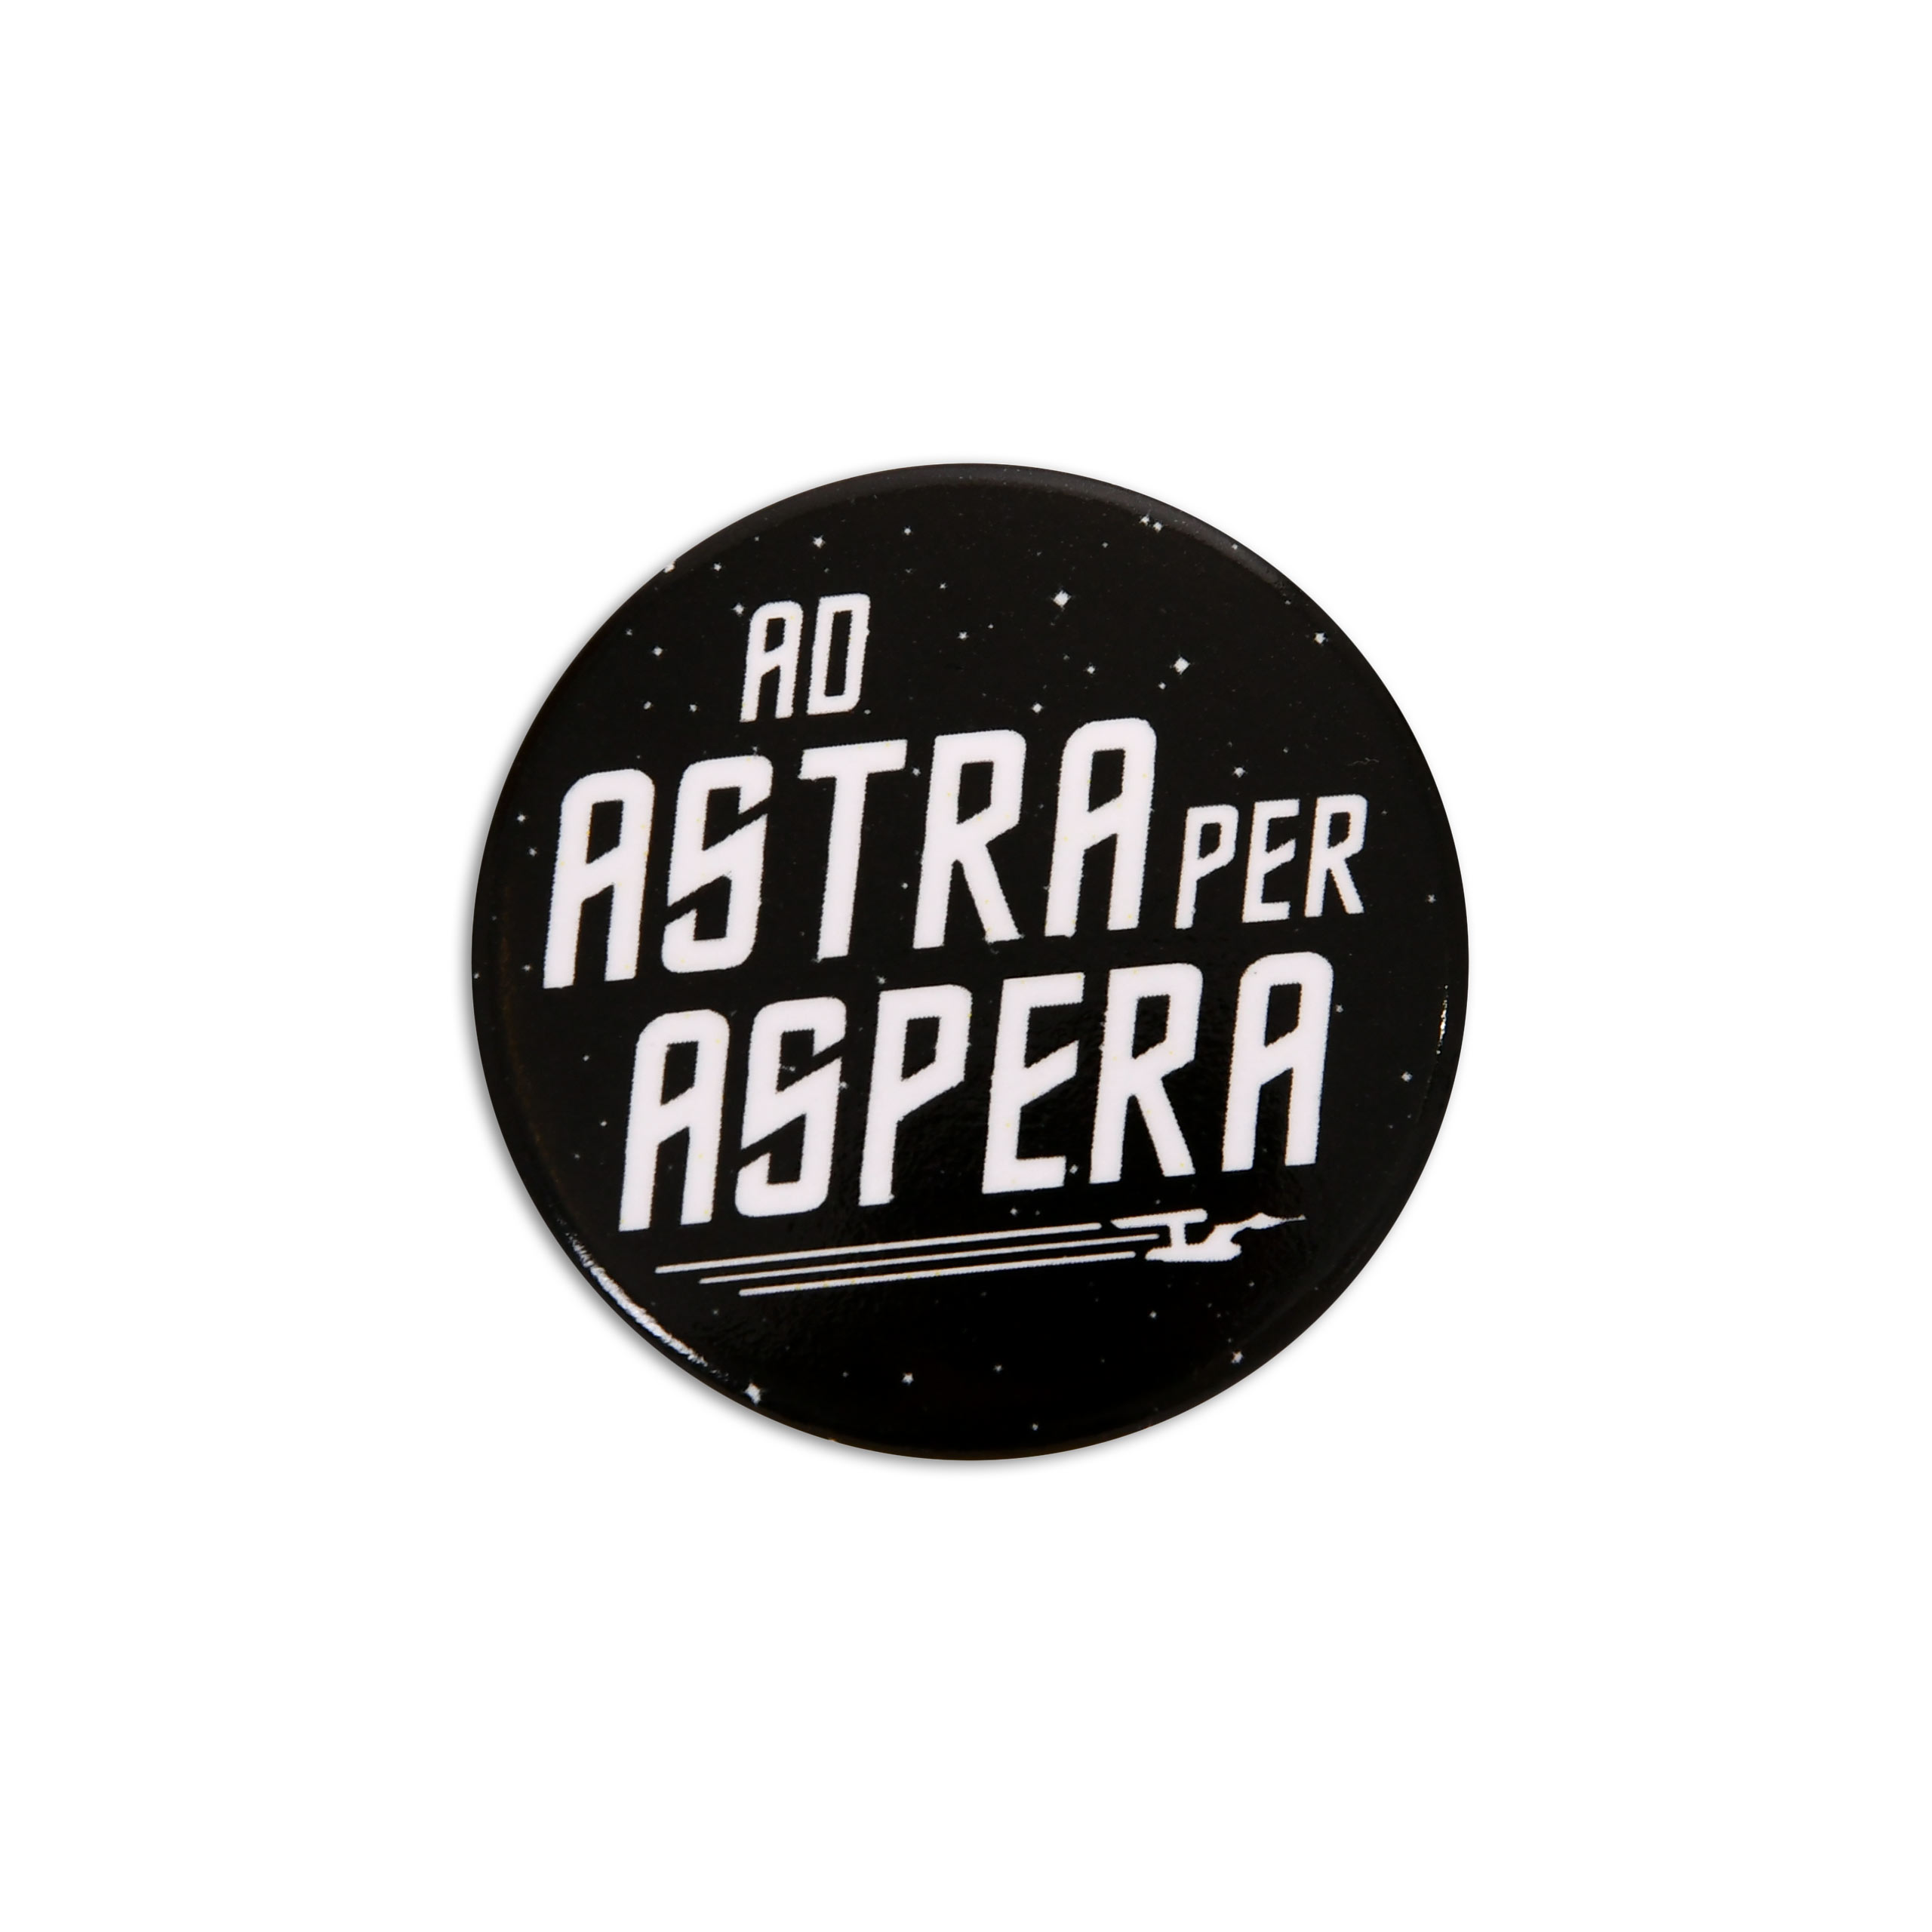 Ad Astra Per Aspera Button for Star Trek Fans